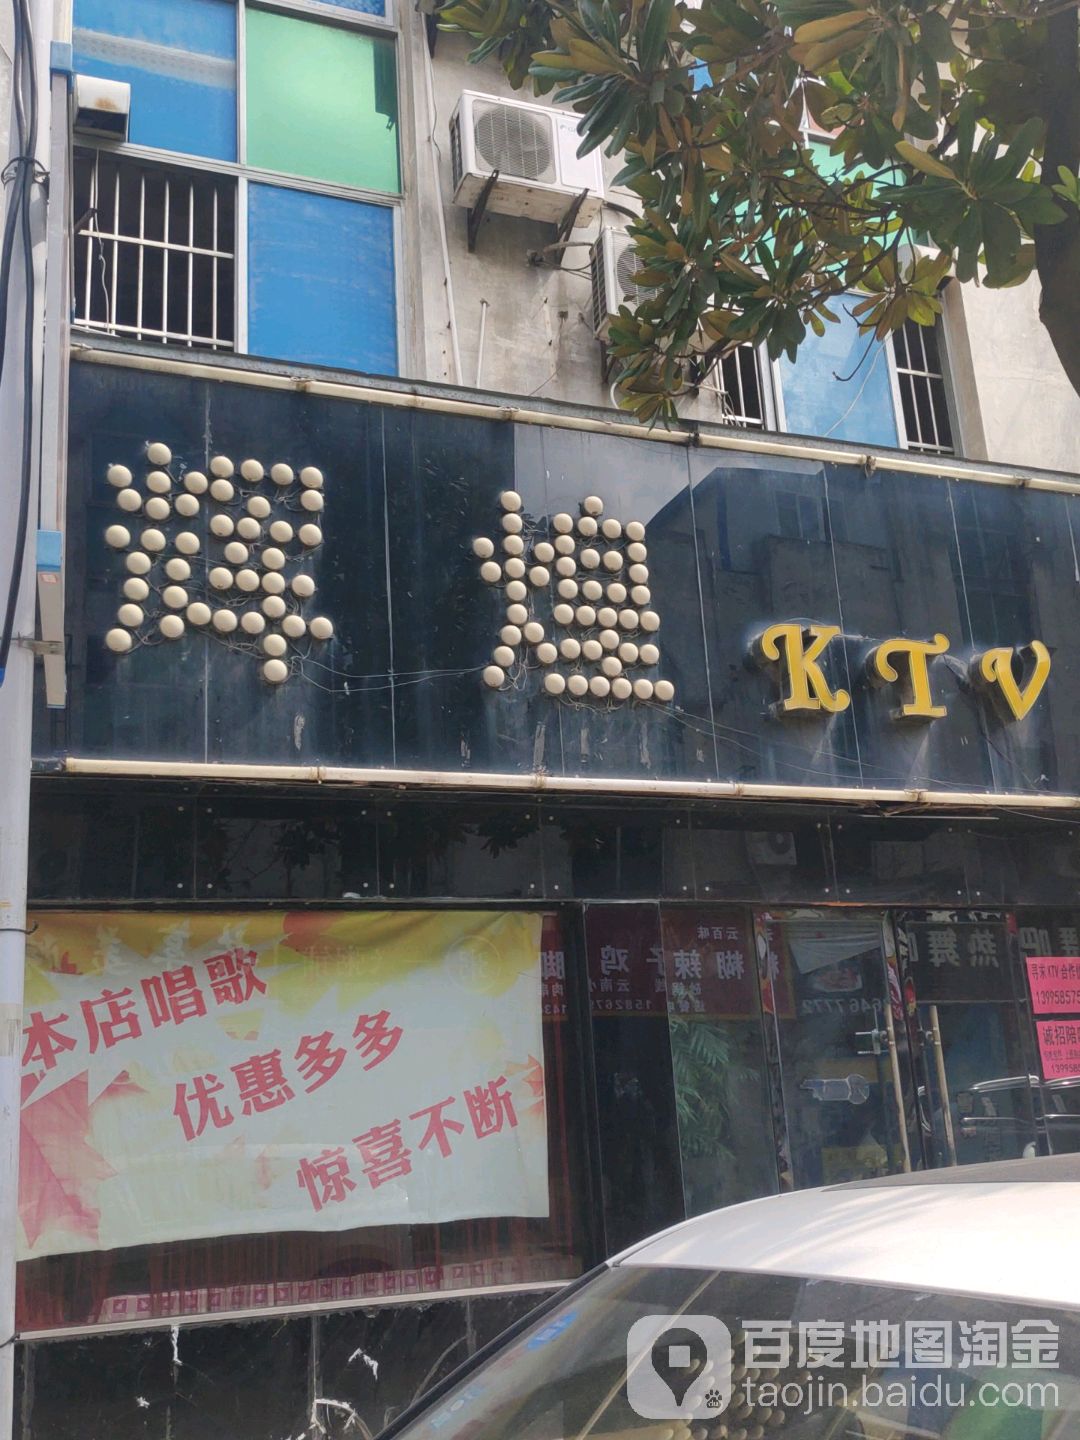 灰煌KTV(宇济商贸街店)